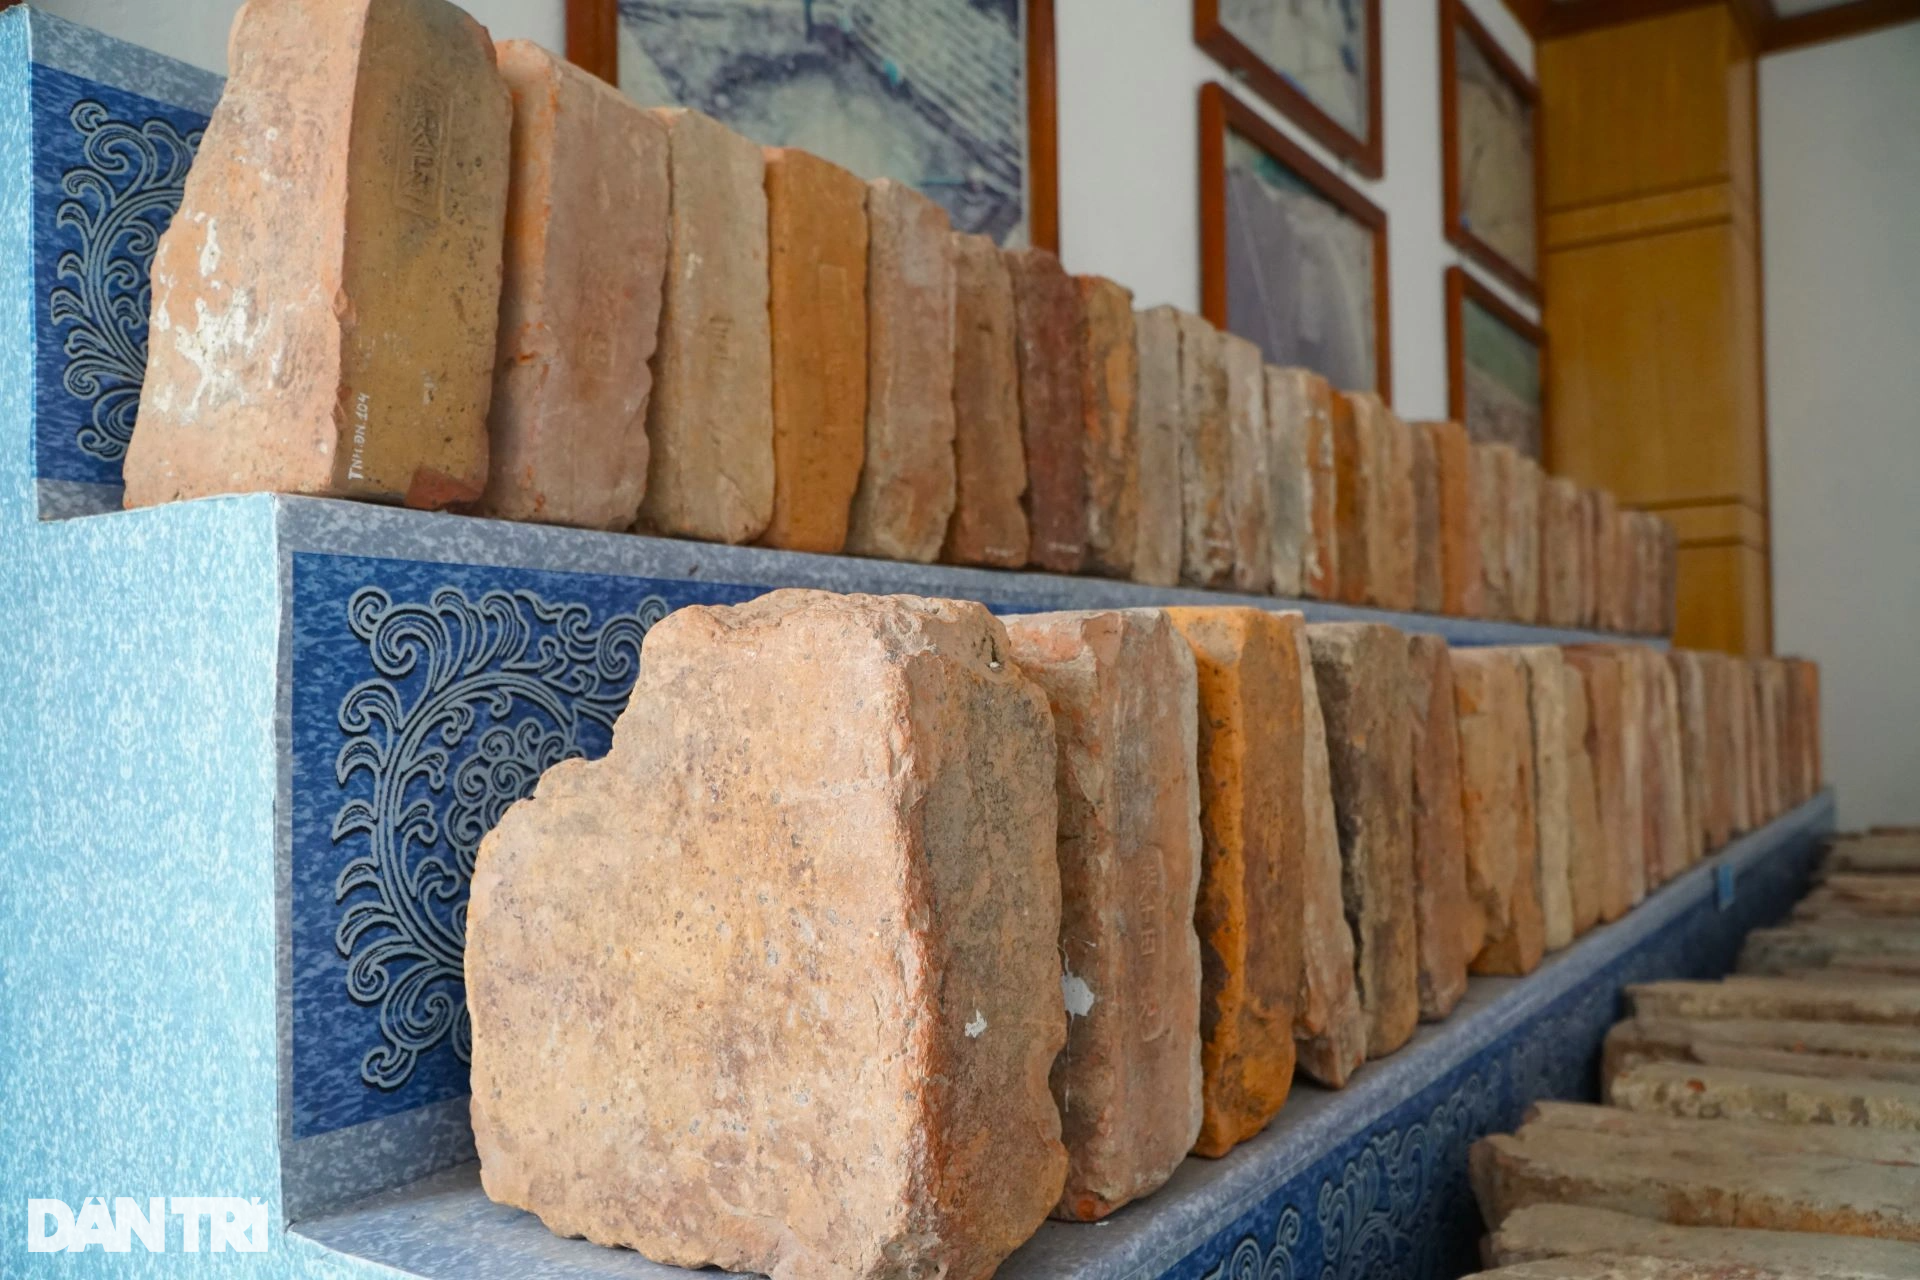 Kho cổ vật tại kinh thành bằng đá độc nhất vô nhị Việt Nam - 2